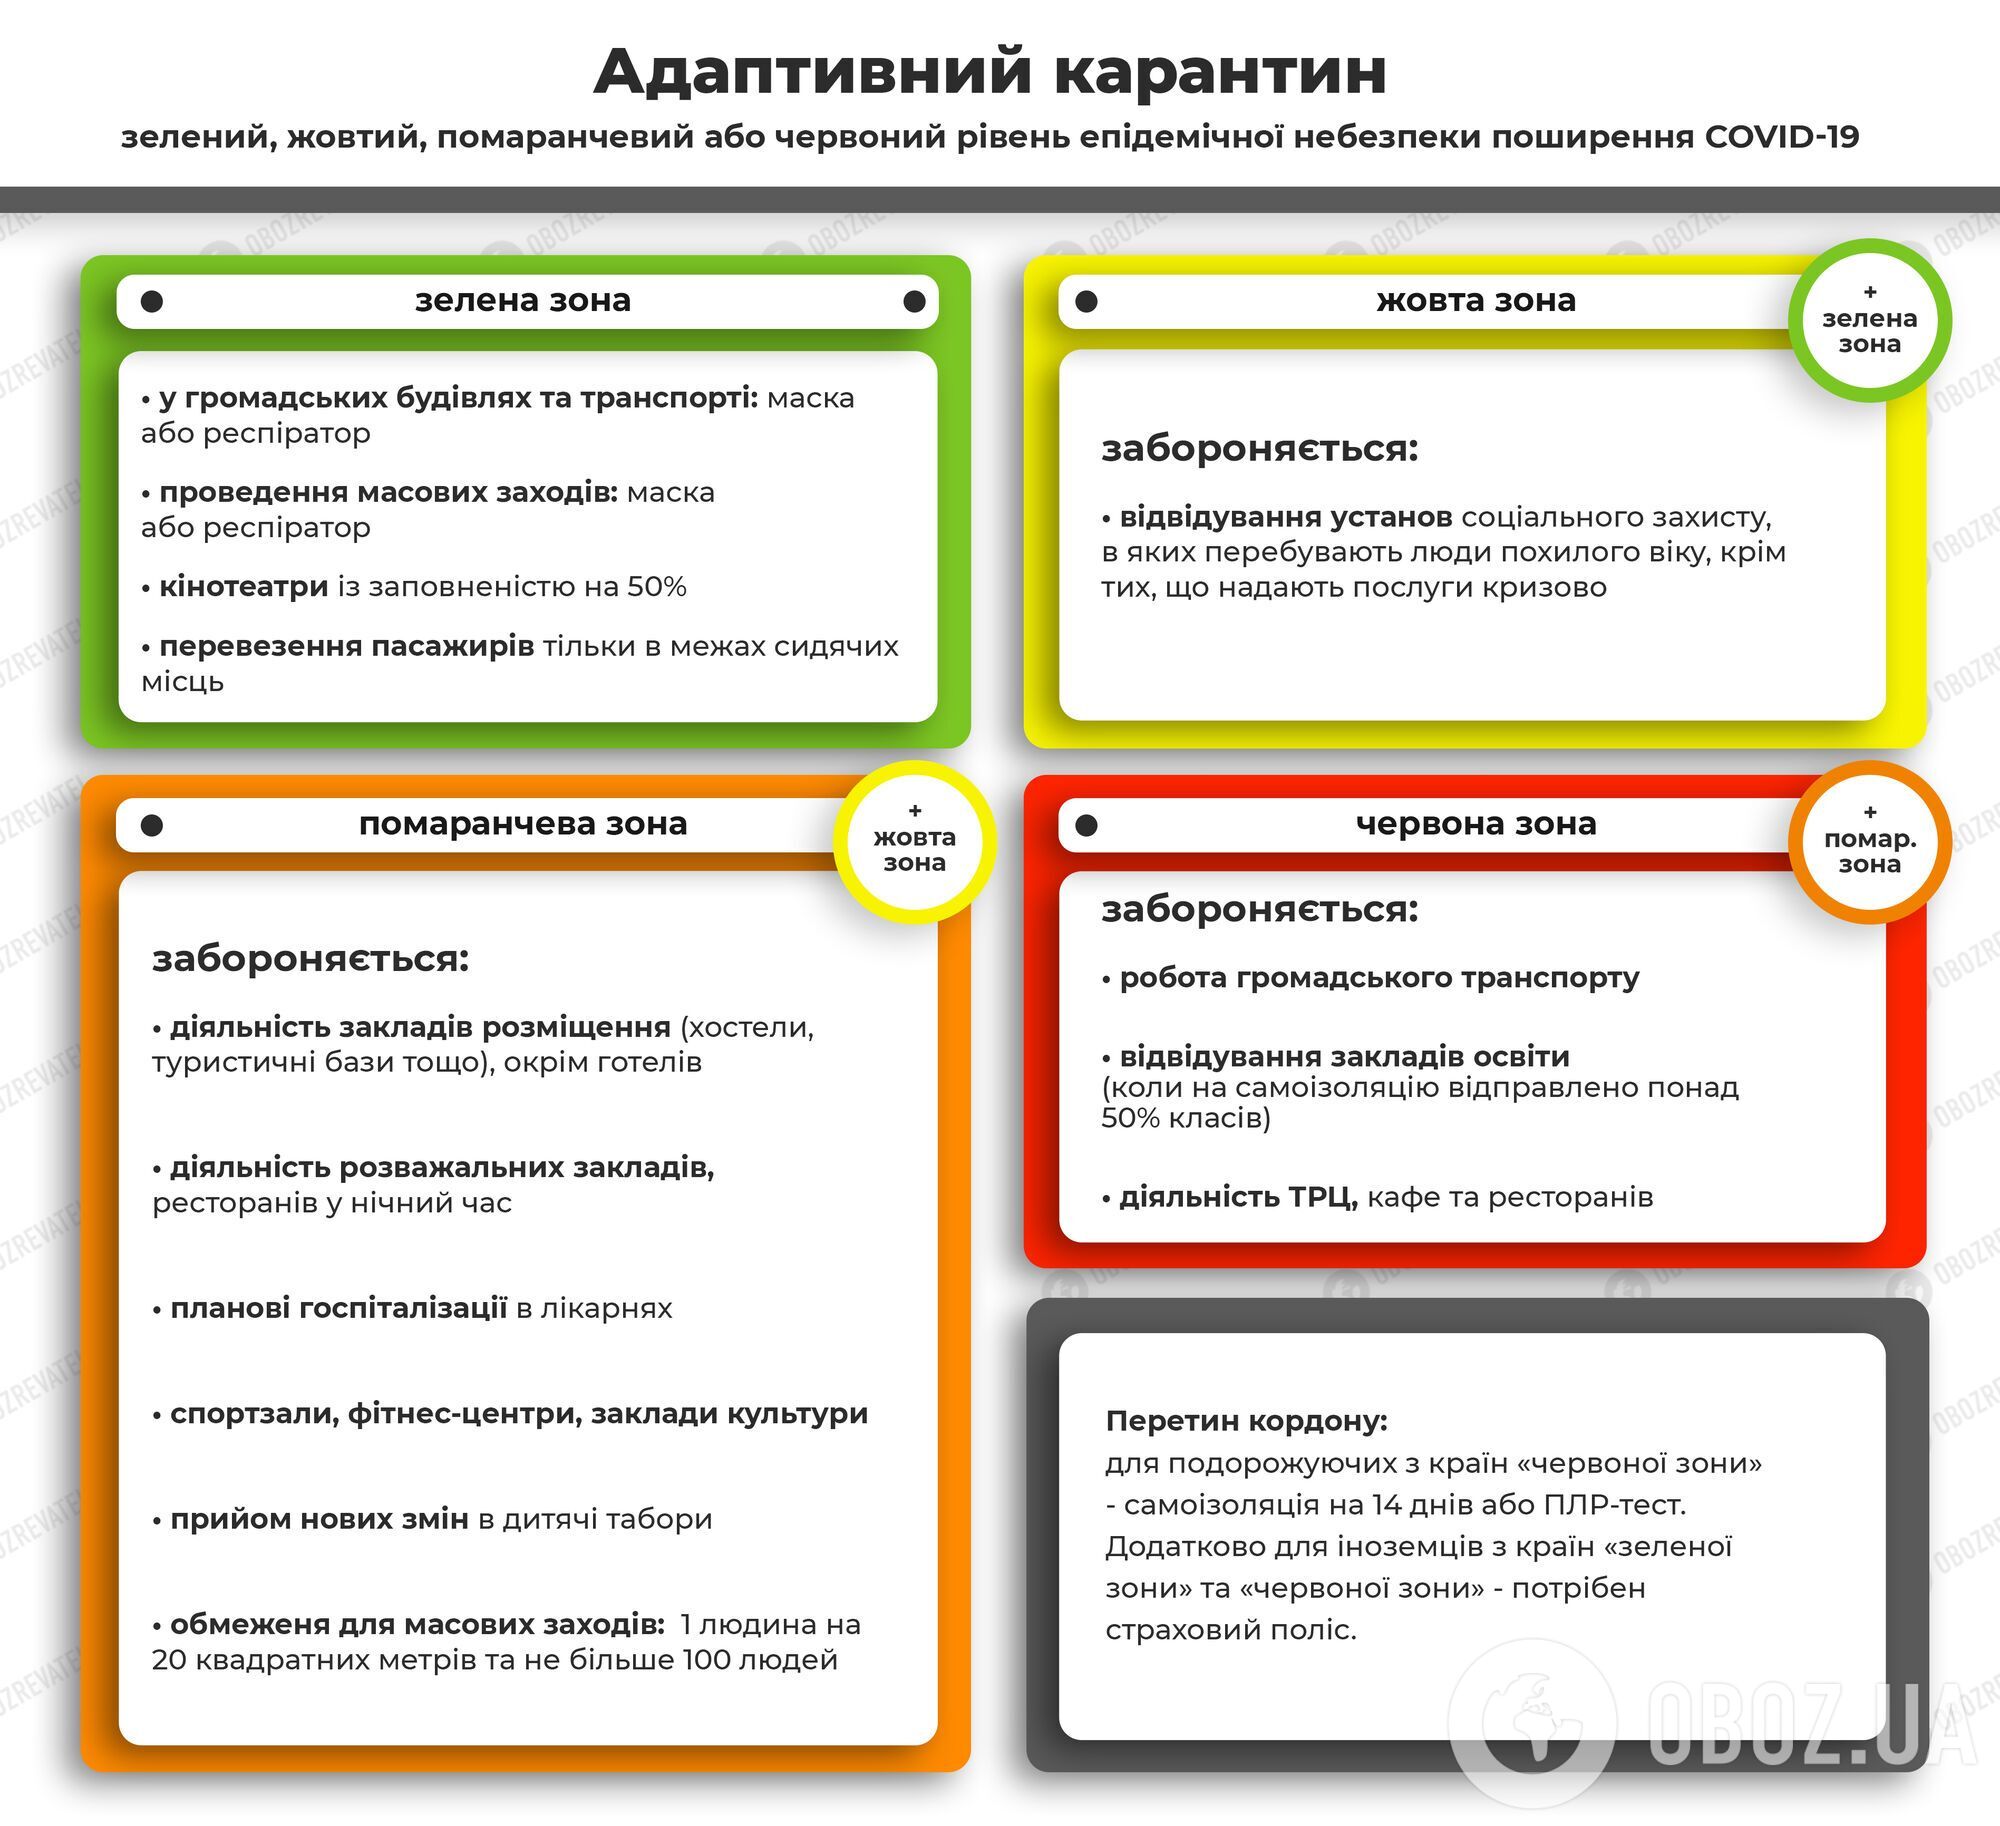 В Україні діє адаптивний карантин з поділом на 4 зони